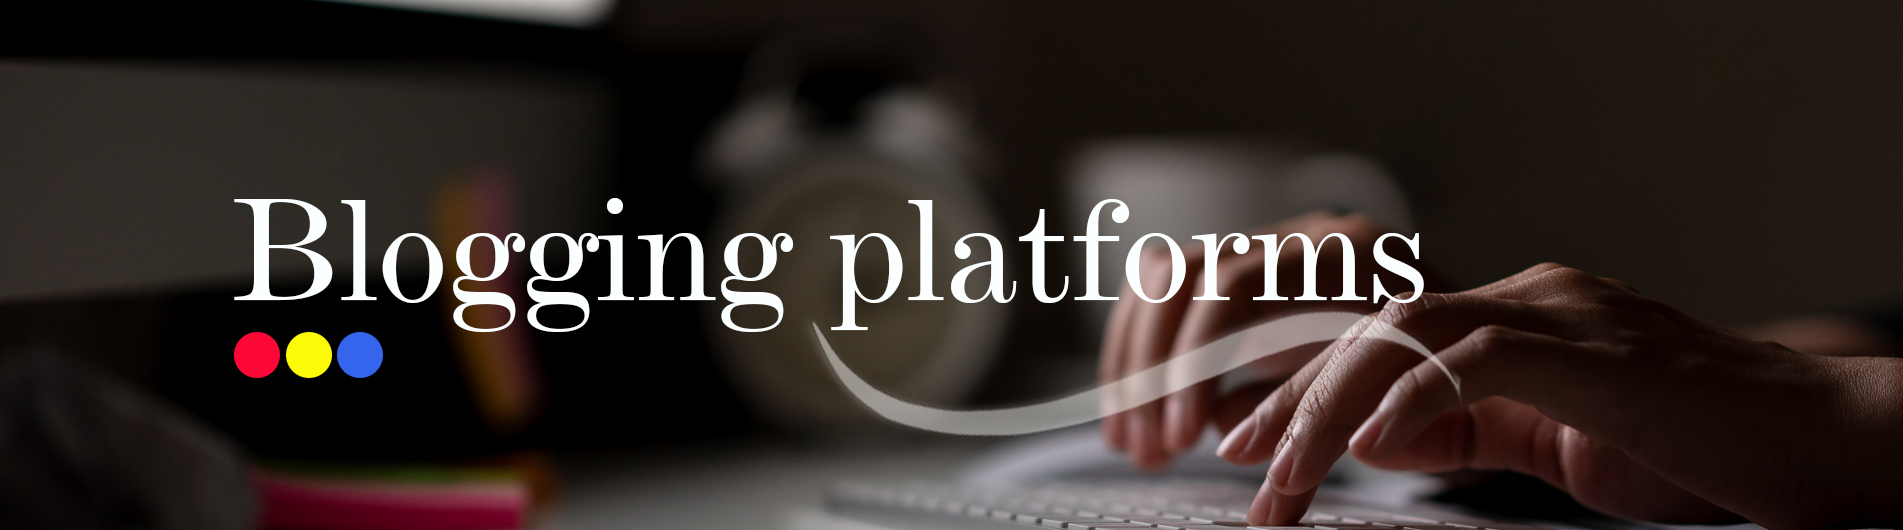 Top 5 Free Blogging Platforms